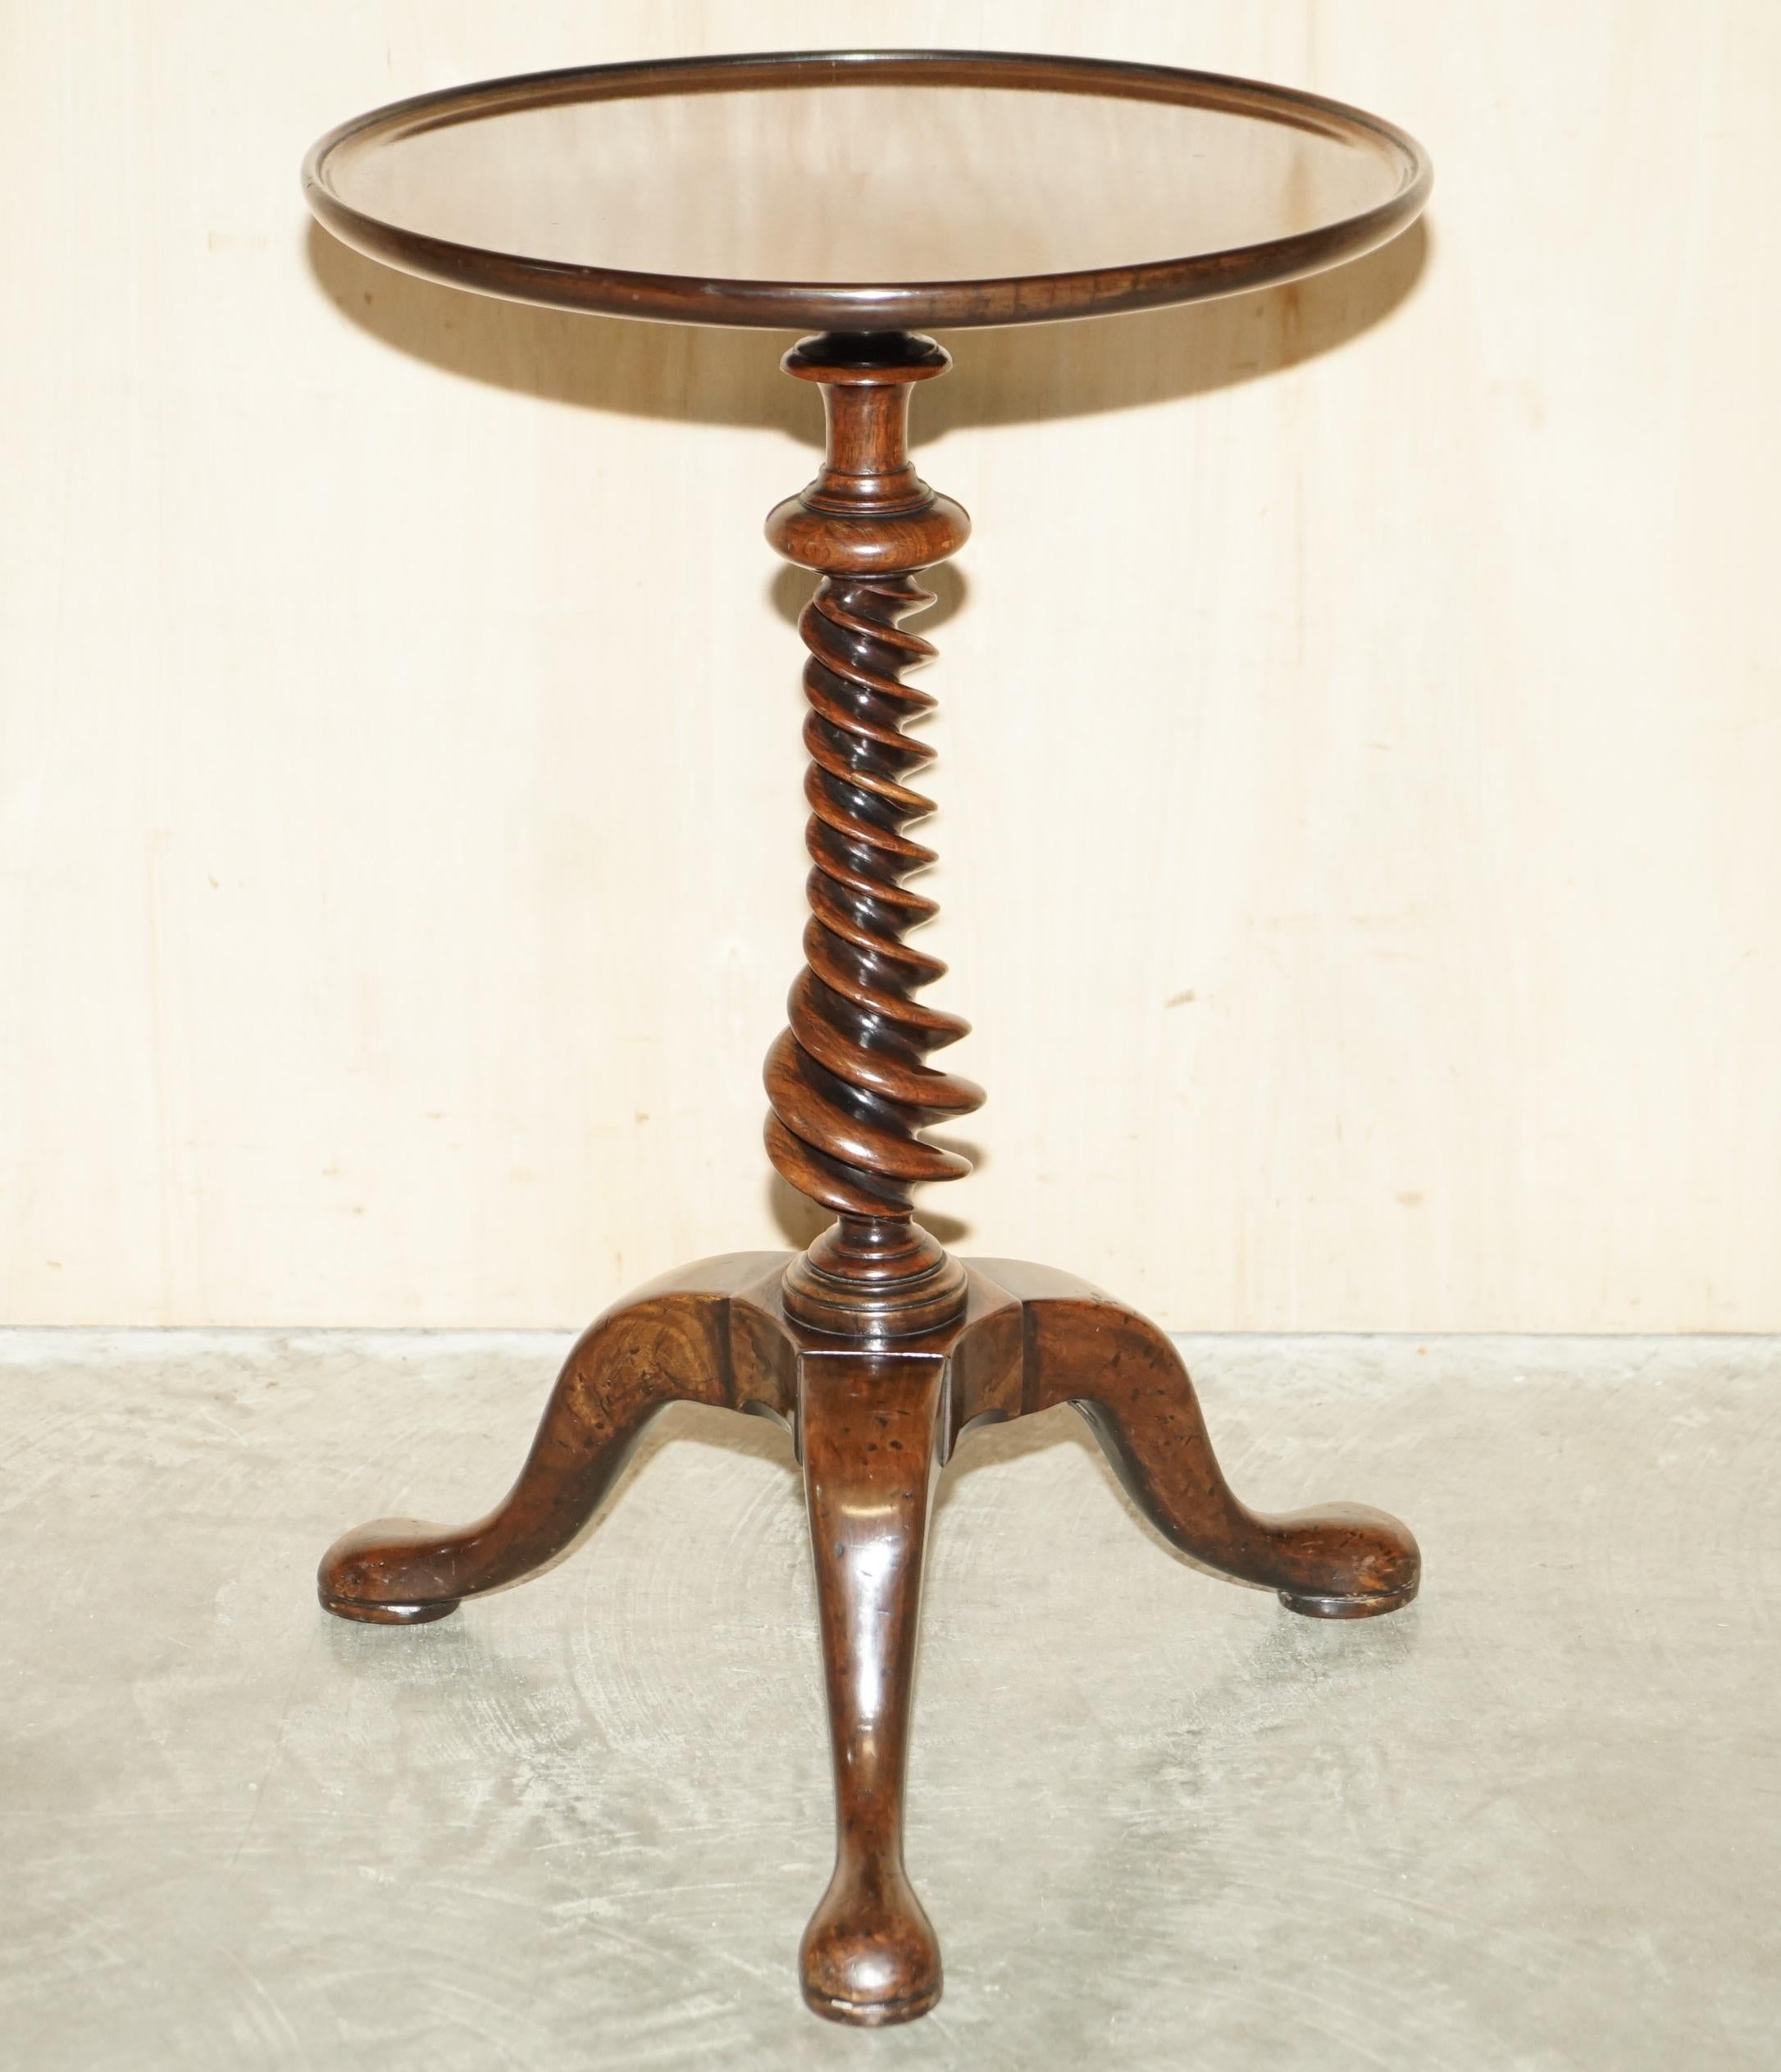 Wir freuen uns, diesen absolut exquisiten Beistelltisch aus reichem Palisanderholz George III um 1800-1820 mit spiralförmigem Säulenfuß zum Verkauf anzubieten.

Einer der schönsten Tische, die ich je in meinem Leben gesehen habe. Der spiralförmige